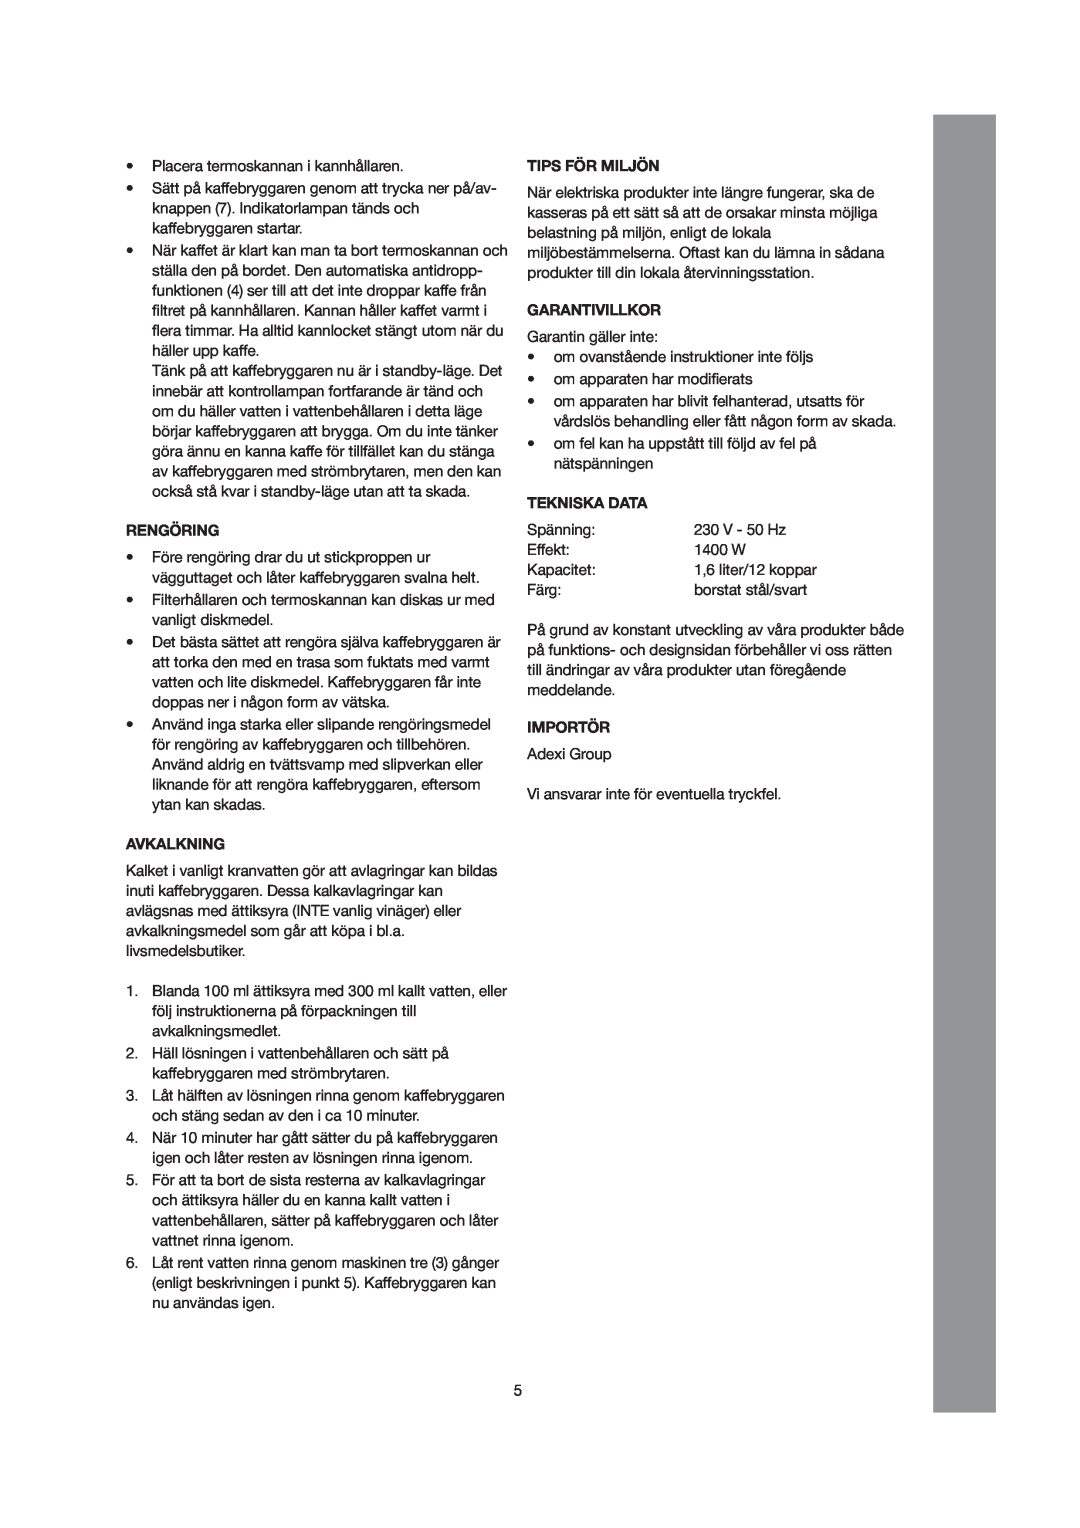 Melissa 245-040 manual Rengöring, Avkalkning, Tips För Miljön, Garantivillkor, Tekniska Data, Importör 